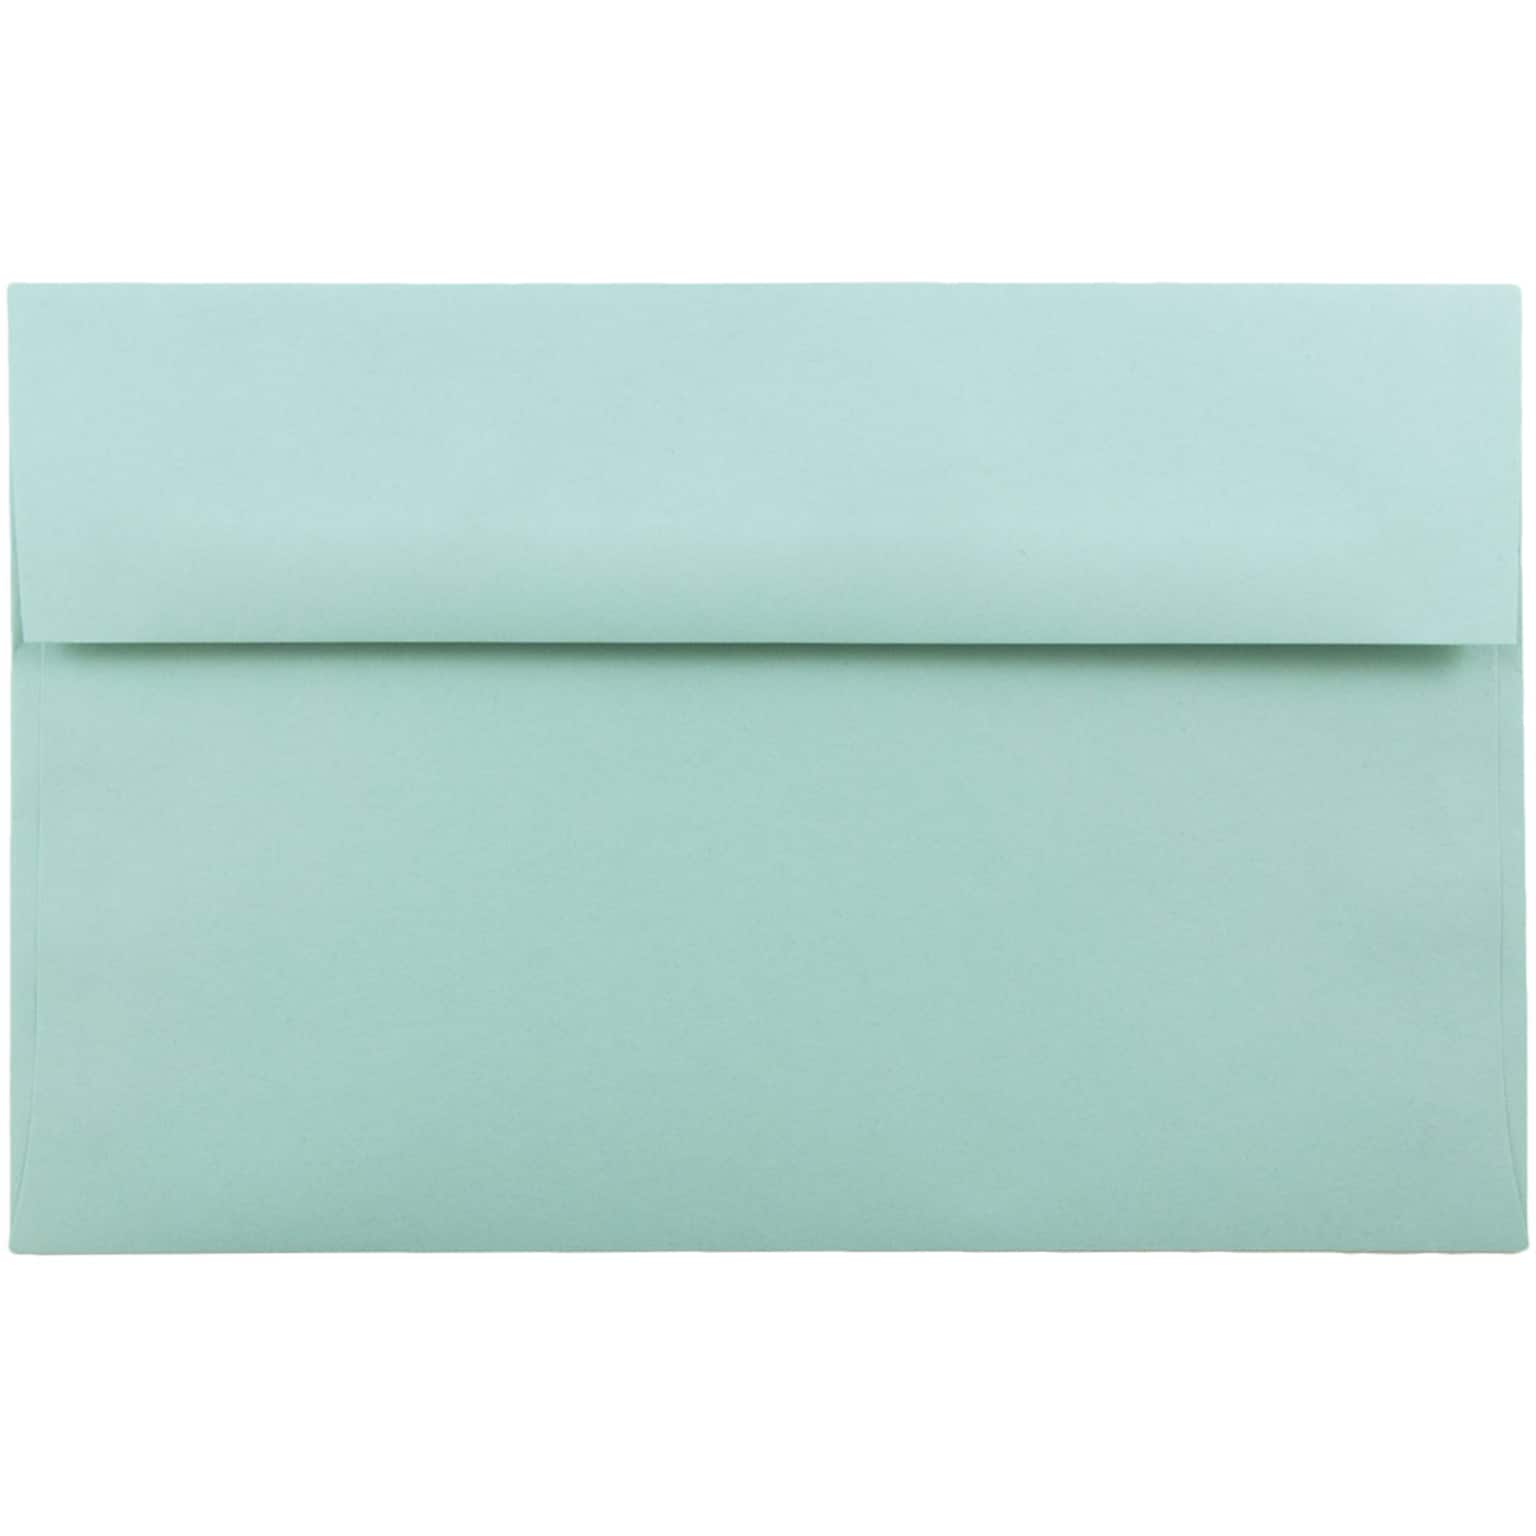 JAM Paper A10 Invitation Envelopes, 6 x 9.5, Aqua Blue, 25/Pack (1523993)